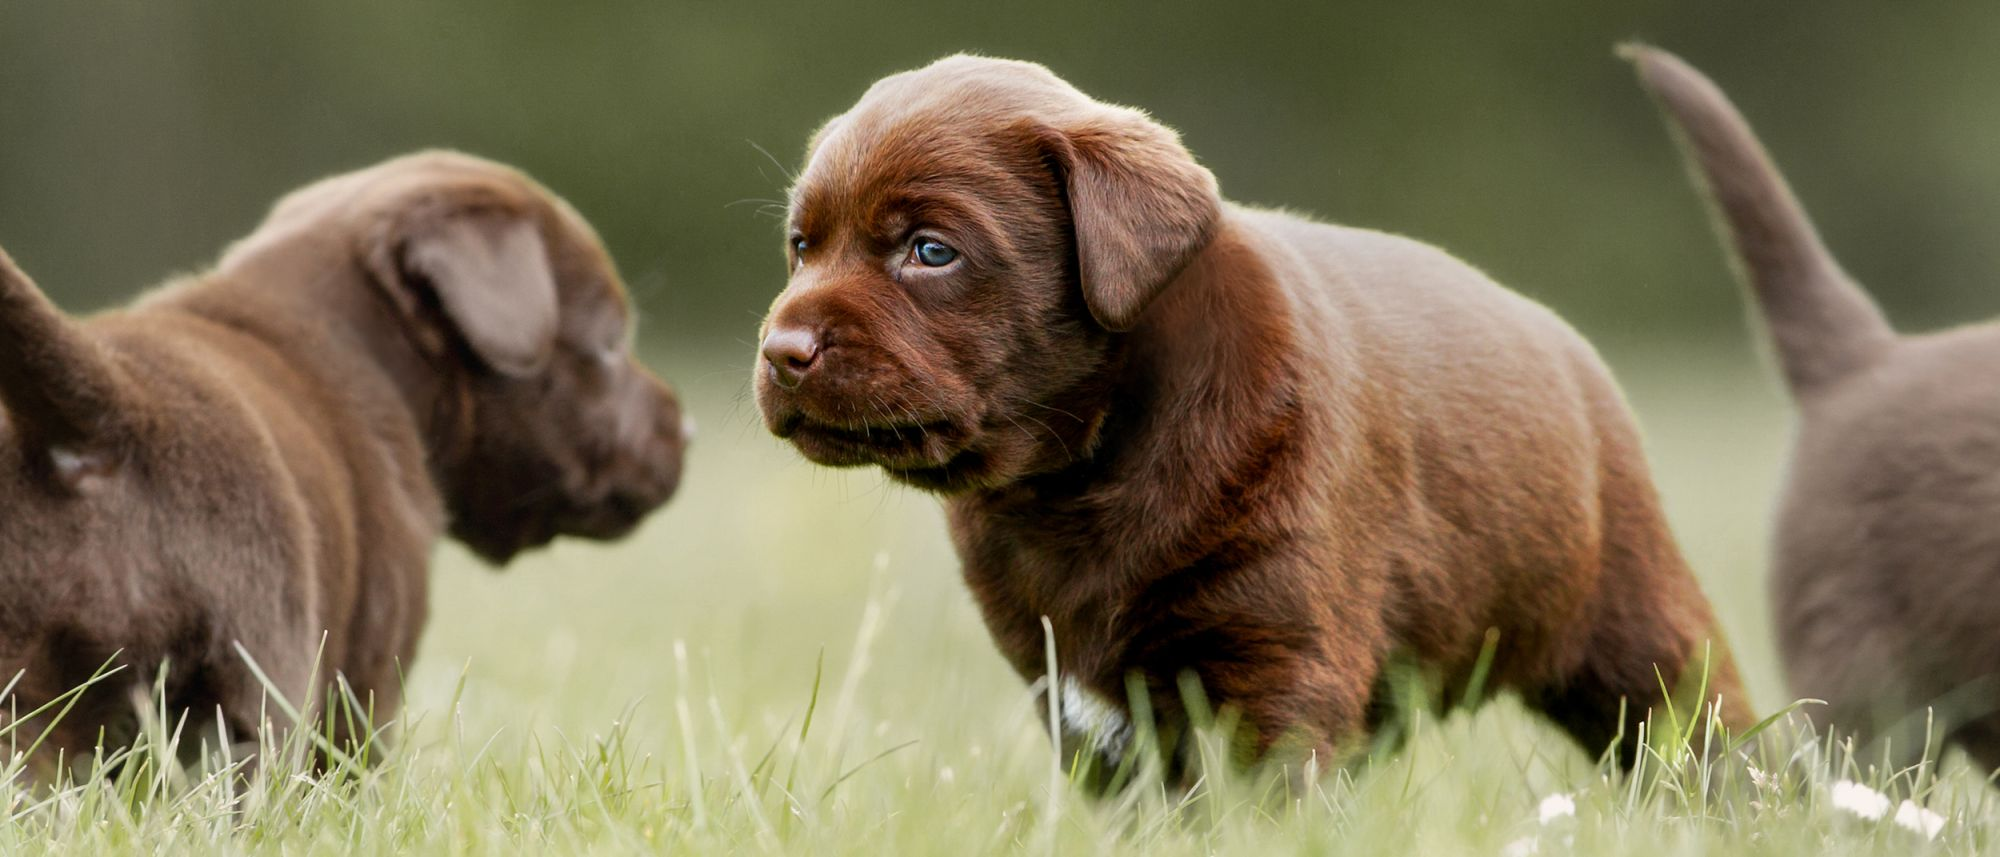 Puppy Labrador Retriever standing outdoors with two other brown Labrador Retriever puppies